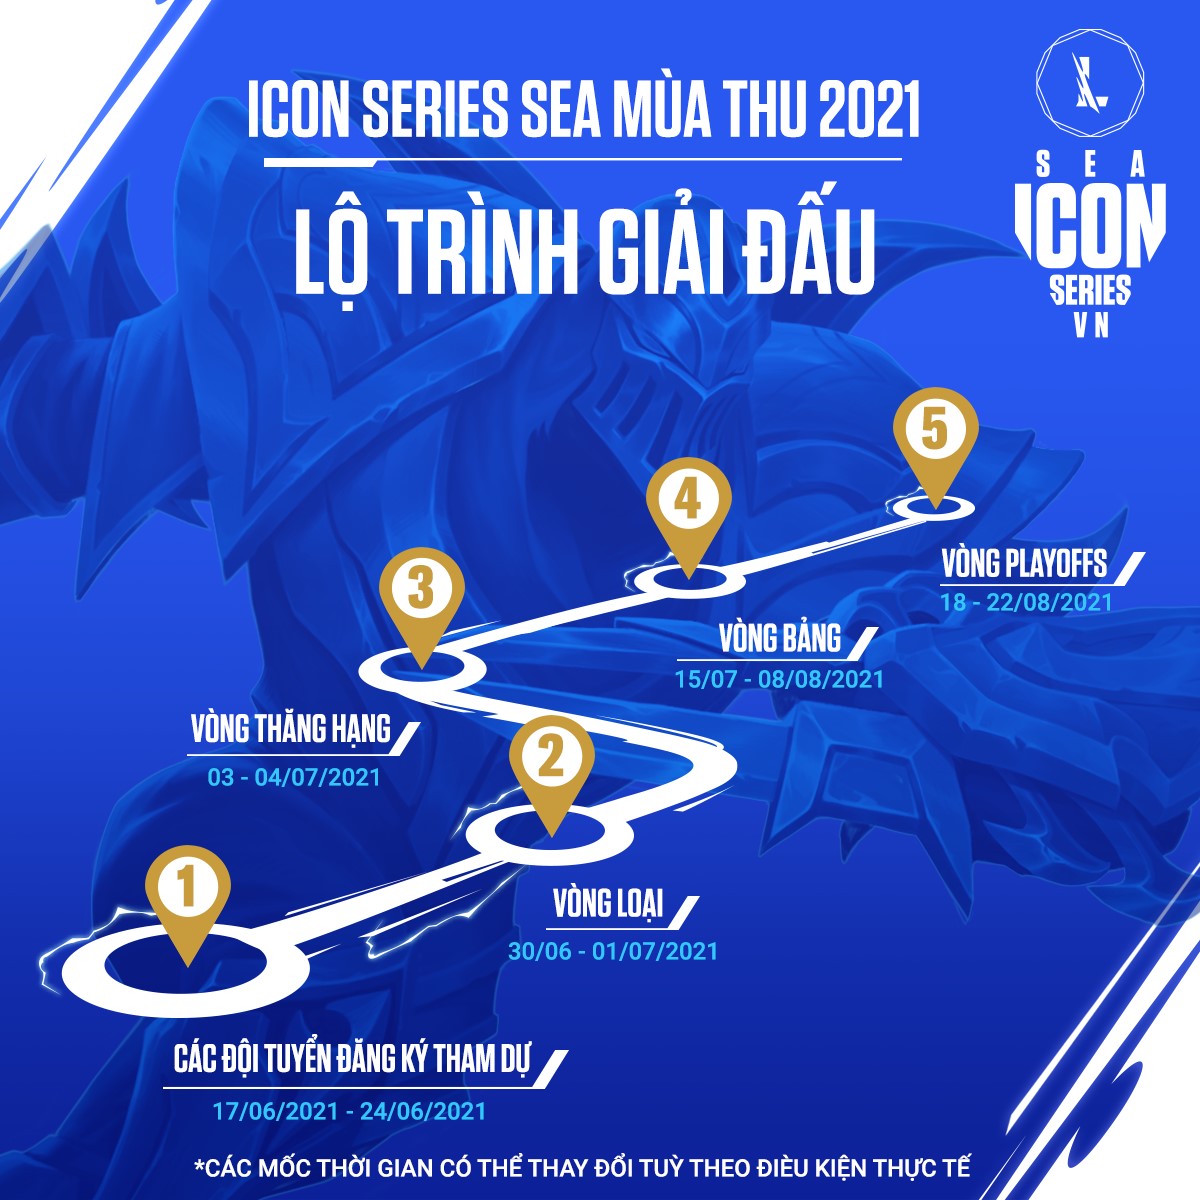 Đội hình 10 đội tuyển tham dự Icon Series SEA mùa Thu 2021 - Ảnh 2